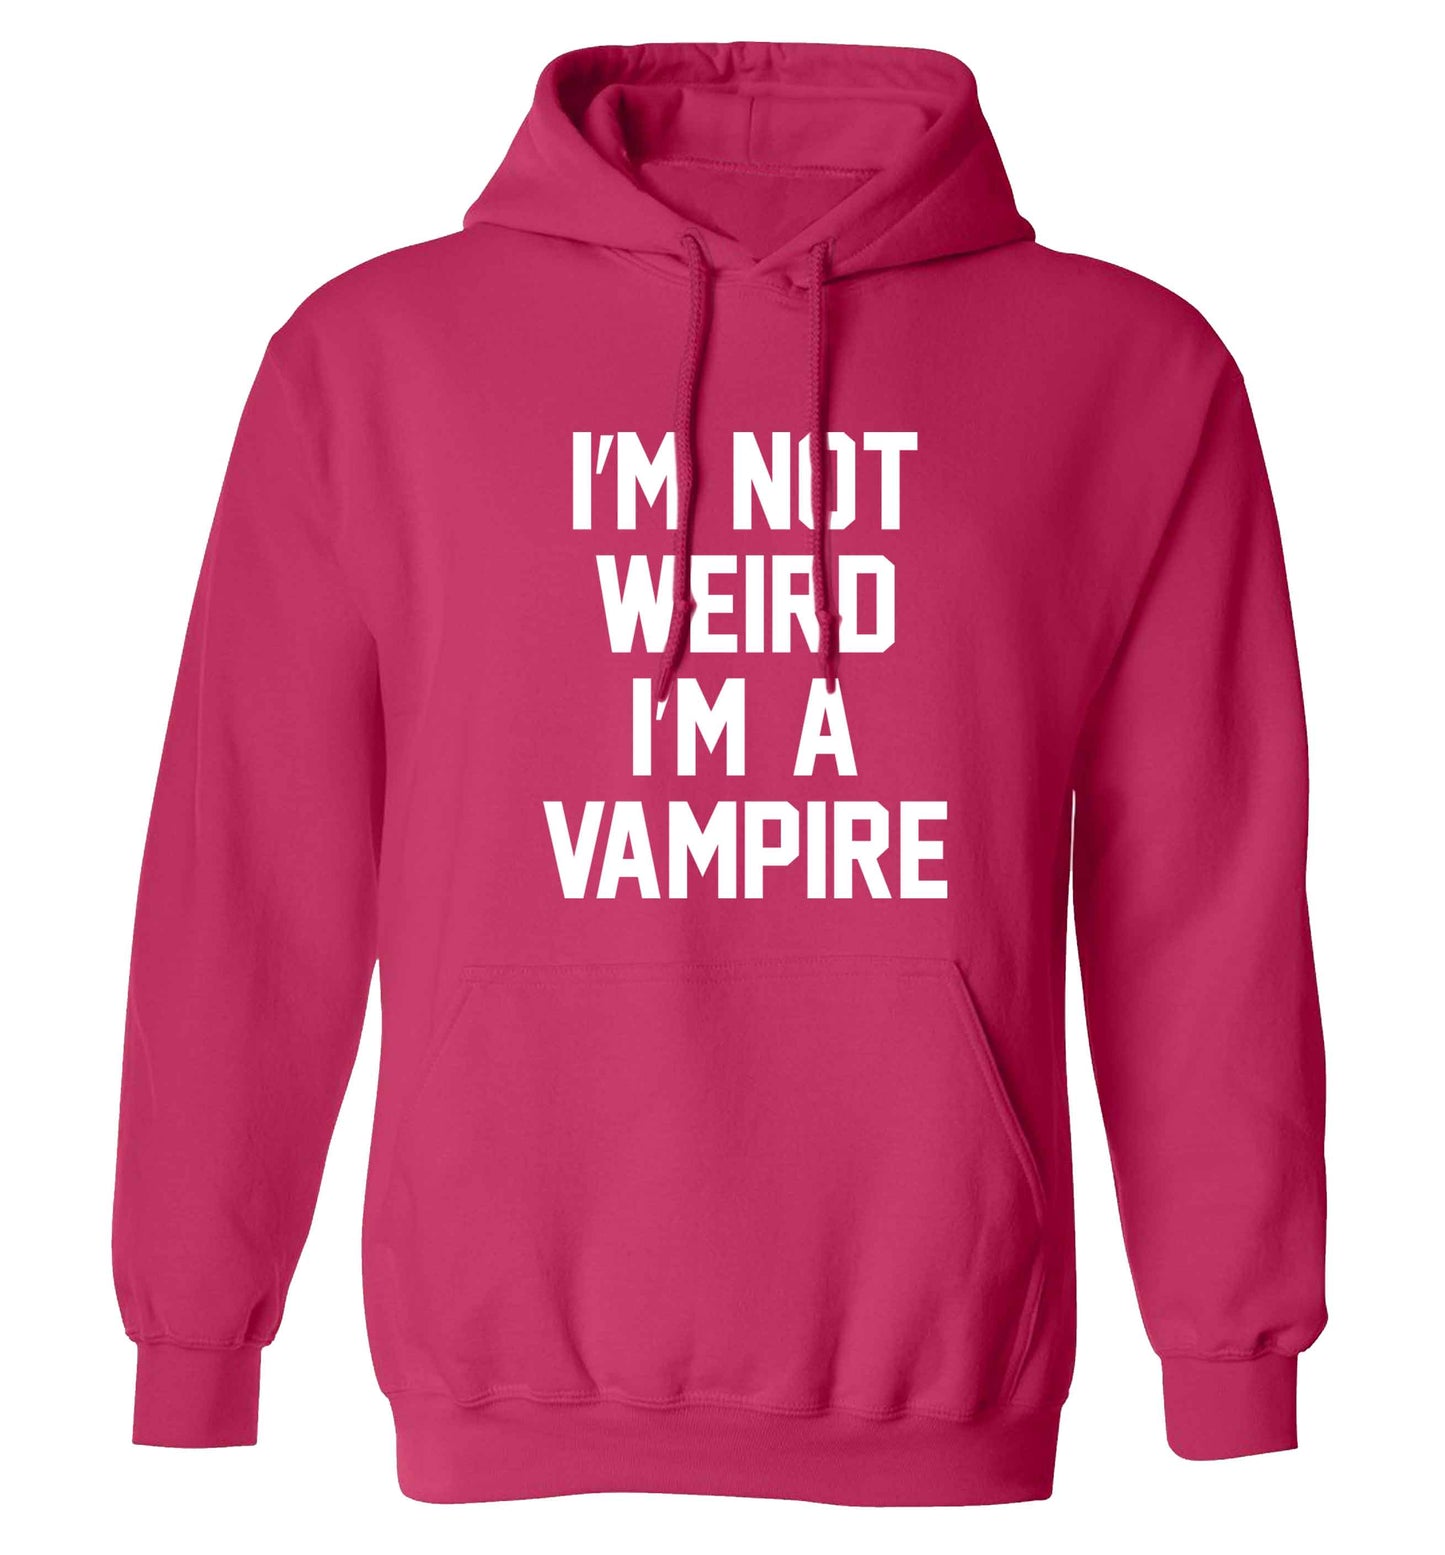 I'm not weird I'm a vampire adults unisex pink hoodie 2XL